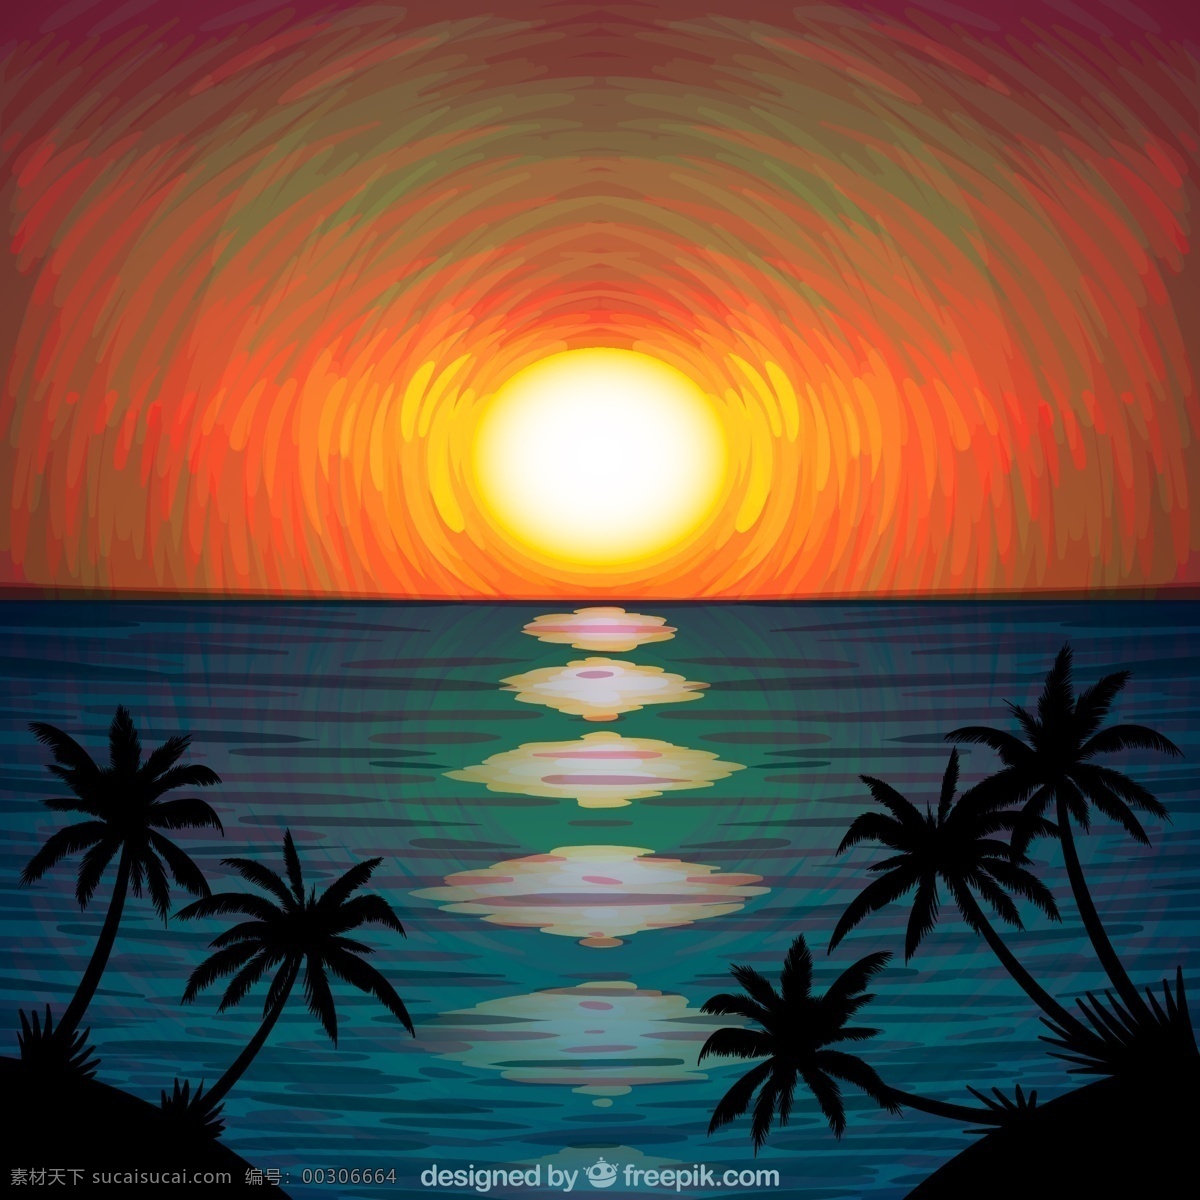 创意 海边 日落 椰子树 风景 大海 海边风景 动漫动画 风景漫画